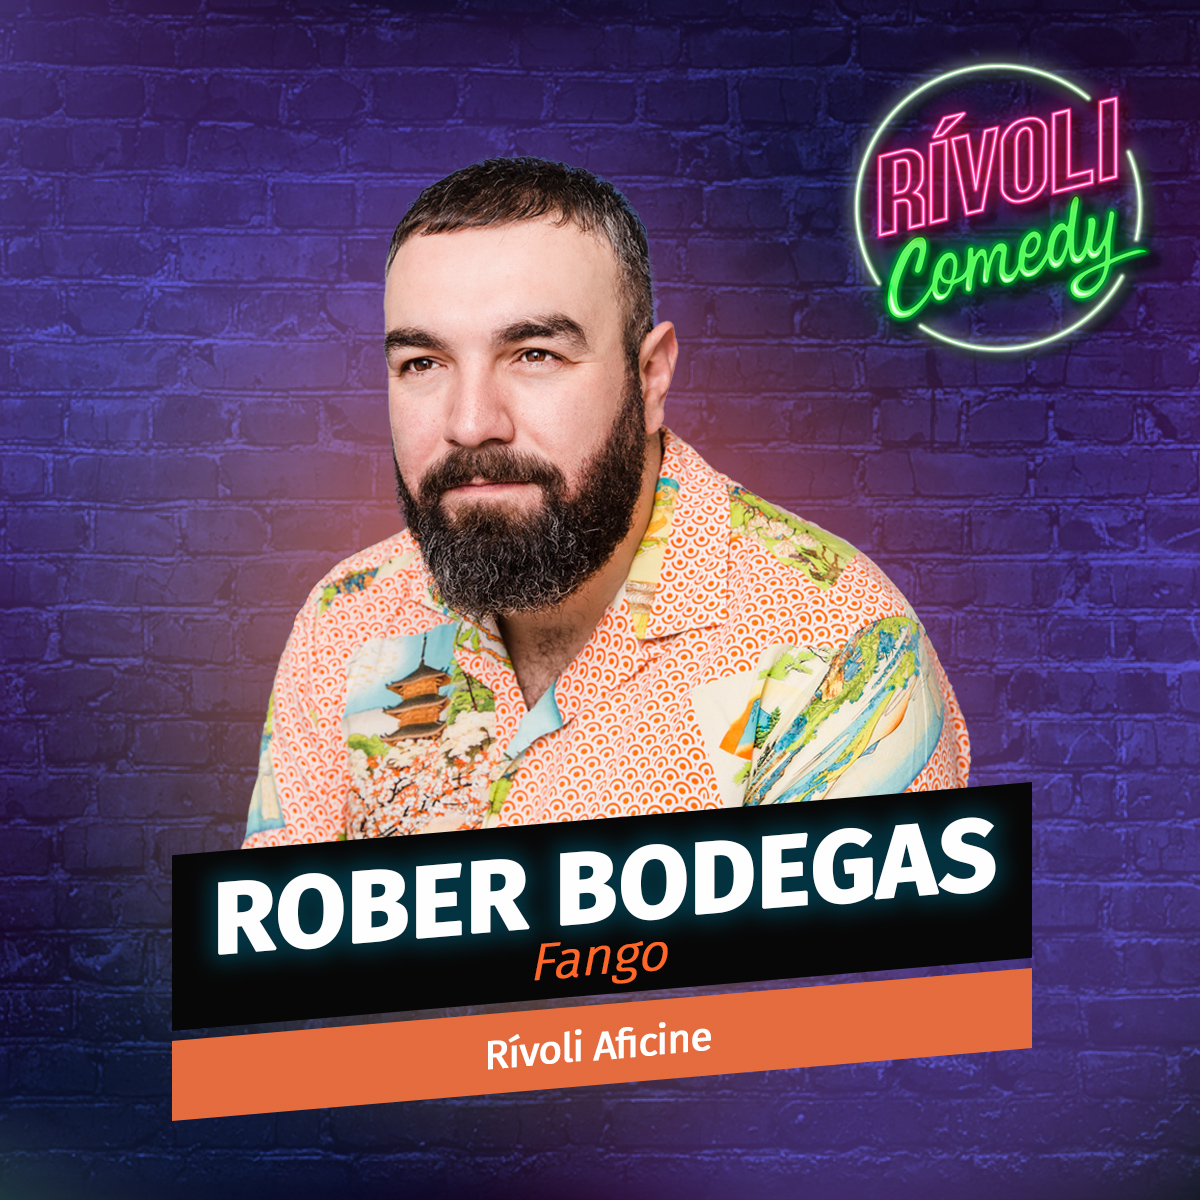 Rober Bodegas | Fango · 28 de febrero · Palma de Mallorca (Rívoli Comedy)